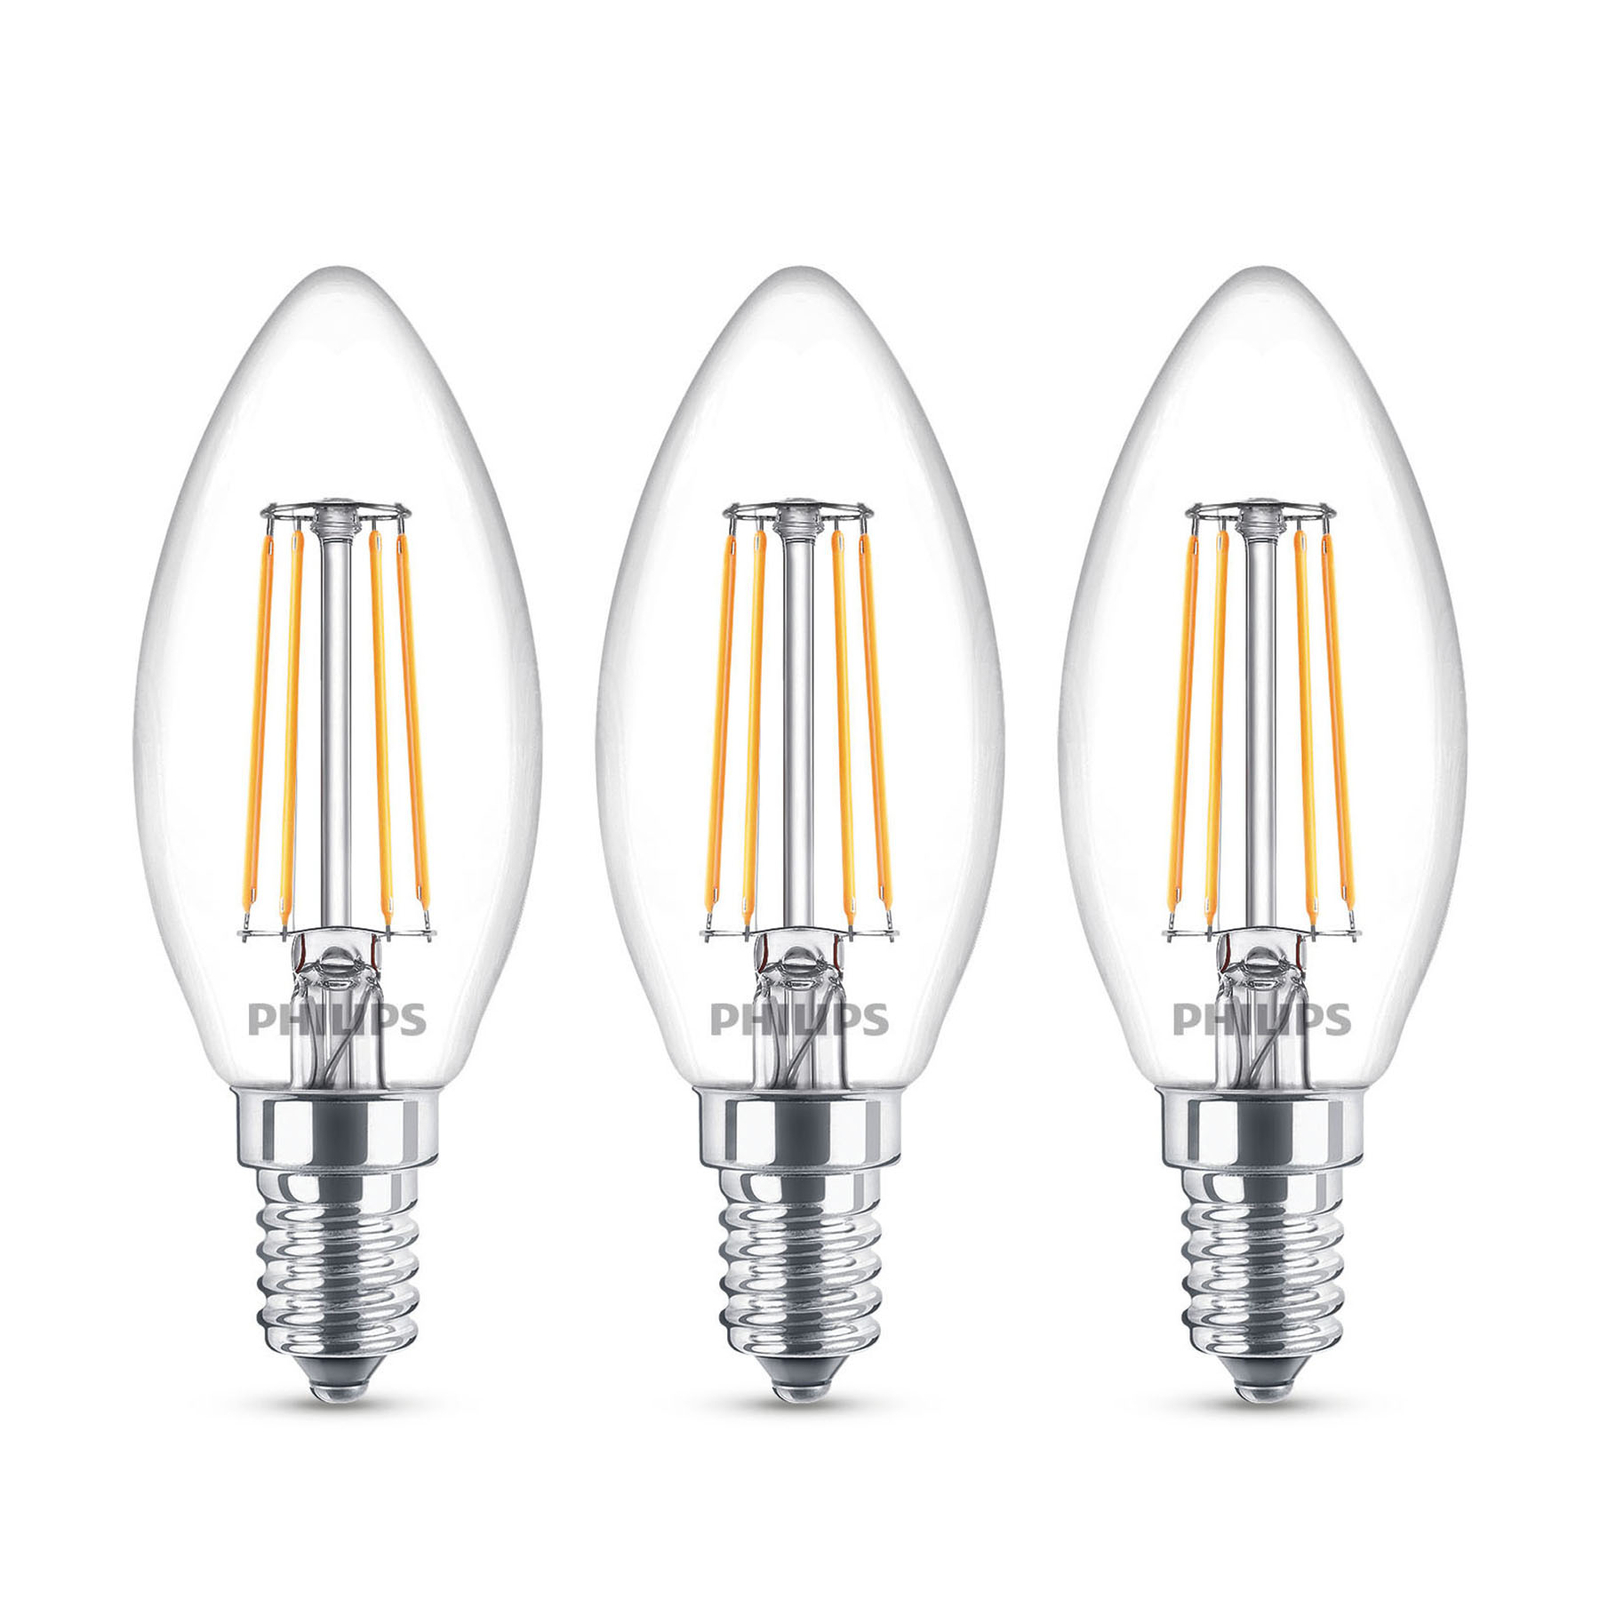 Philips LED gyertya lámpa E14 B35 4,3W átlát 3db